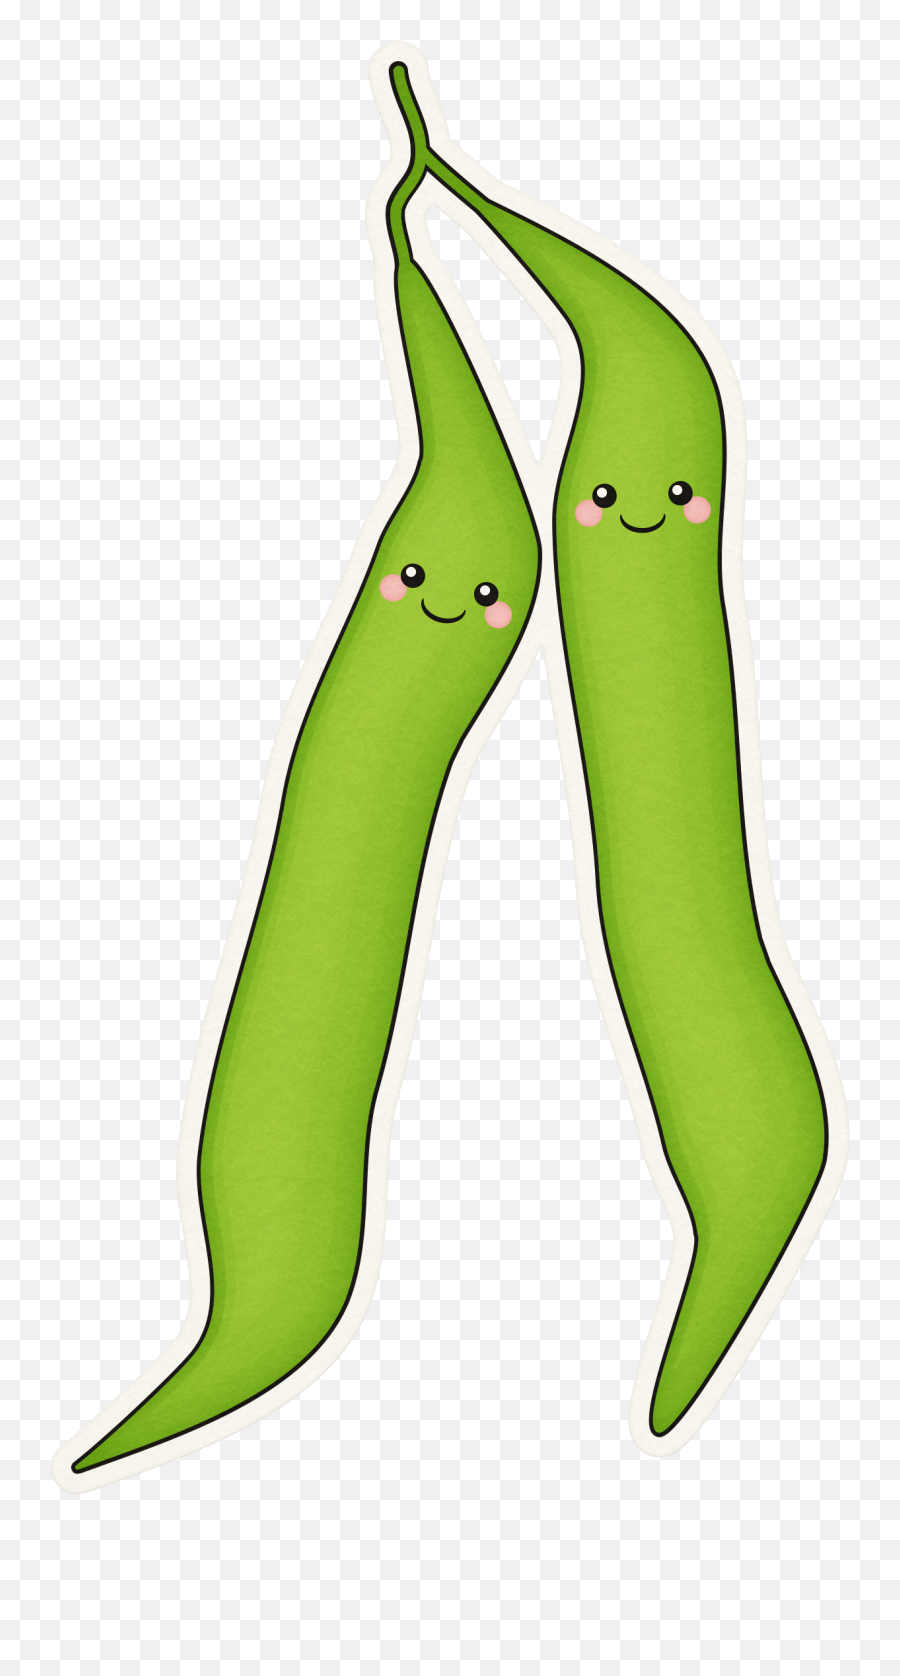 Cute Green Bean Clipart - Easy To Draw Green Bean Emoji,Green Bean Emoji